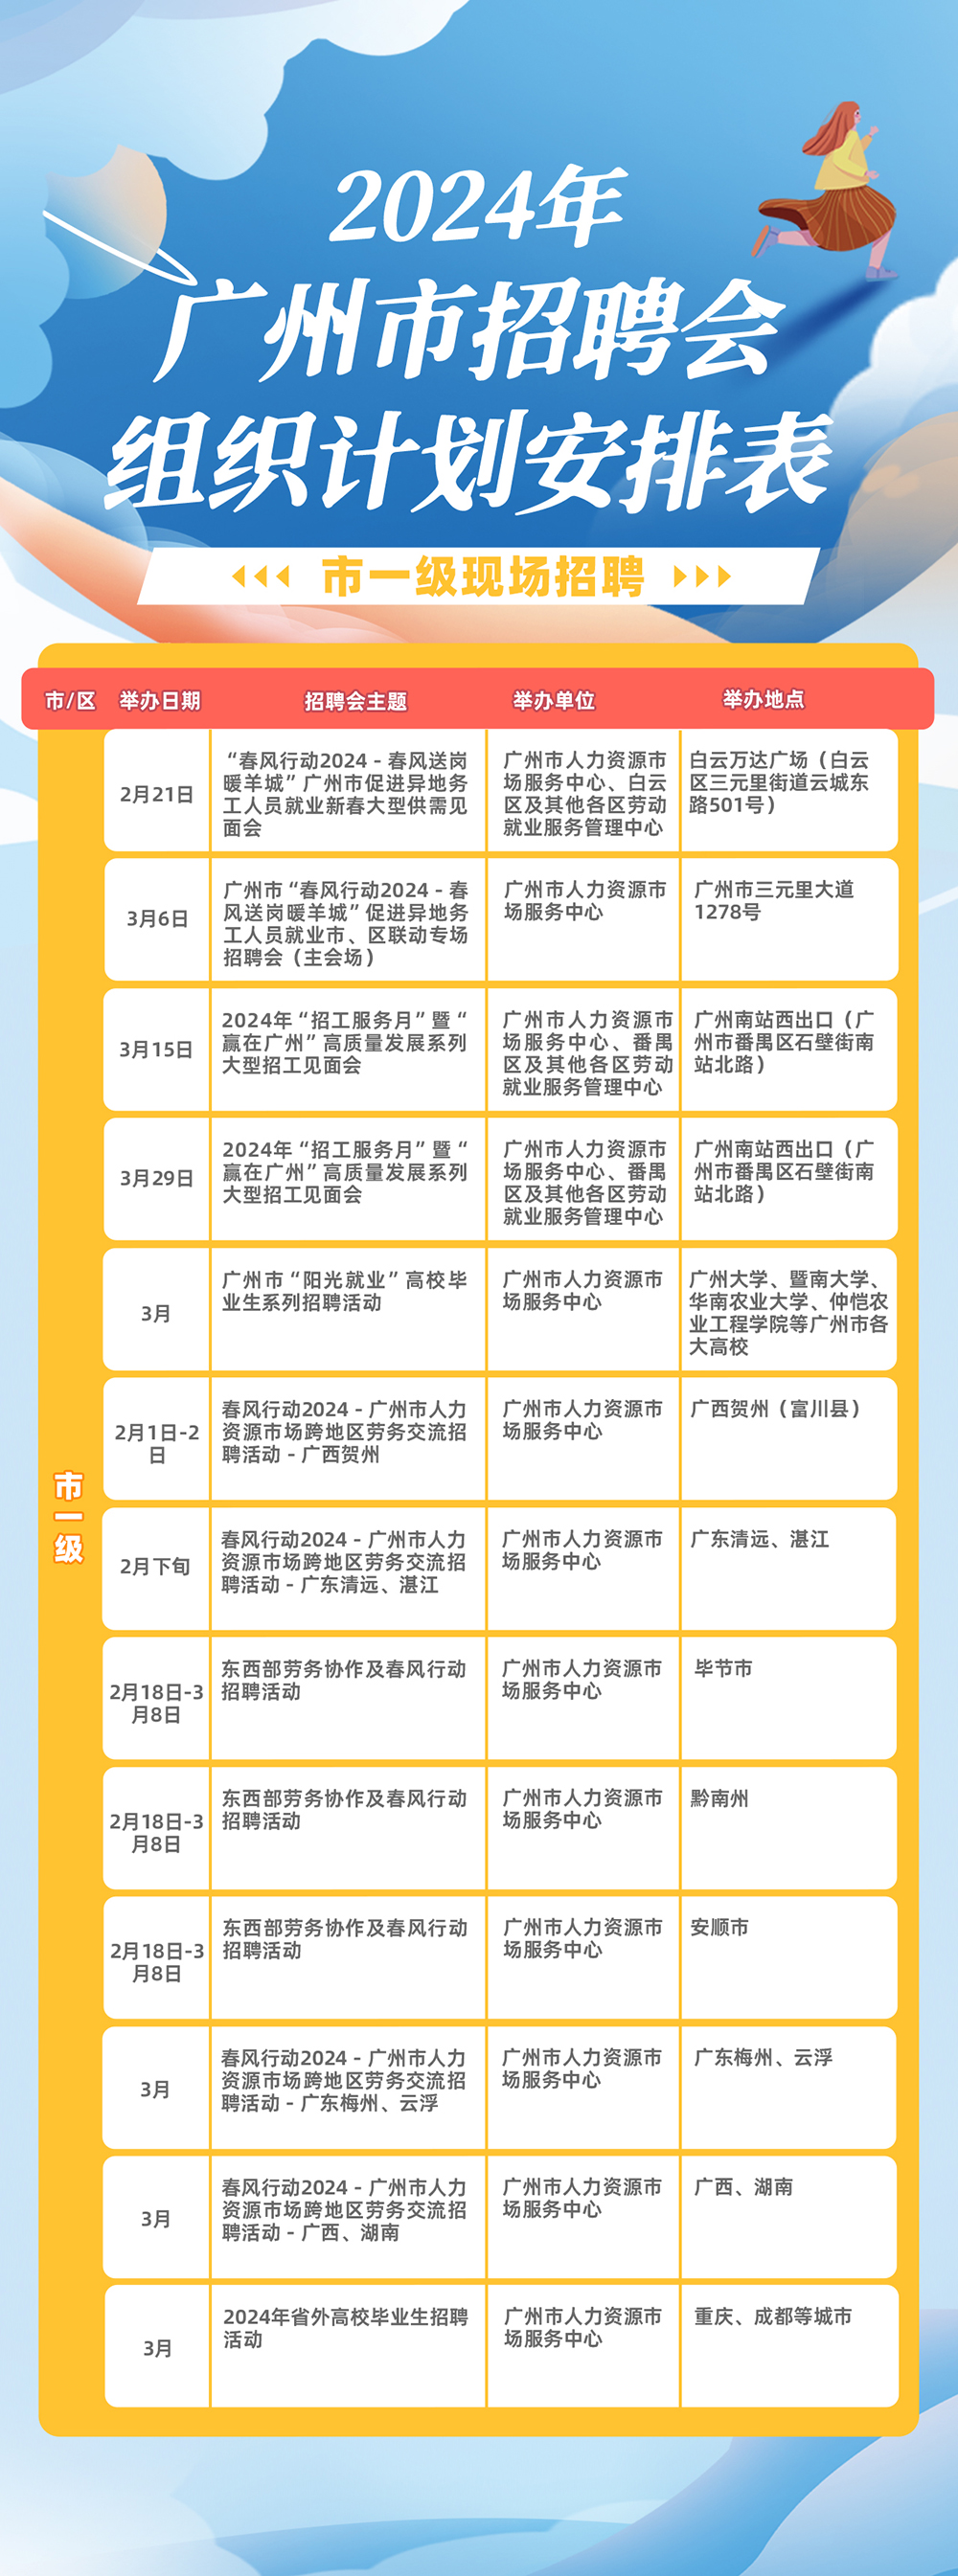 附件：2024年广州市招聘会组织计划安排表1.jpg